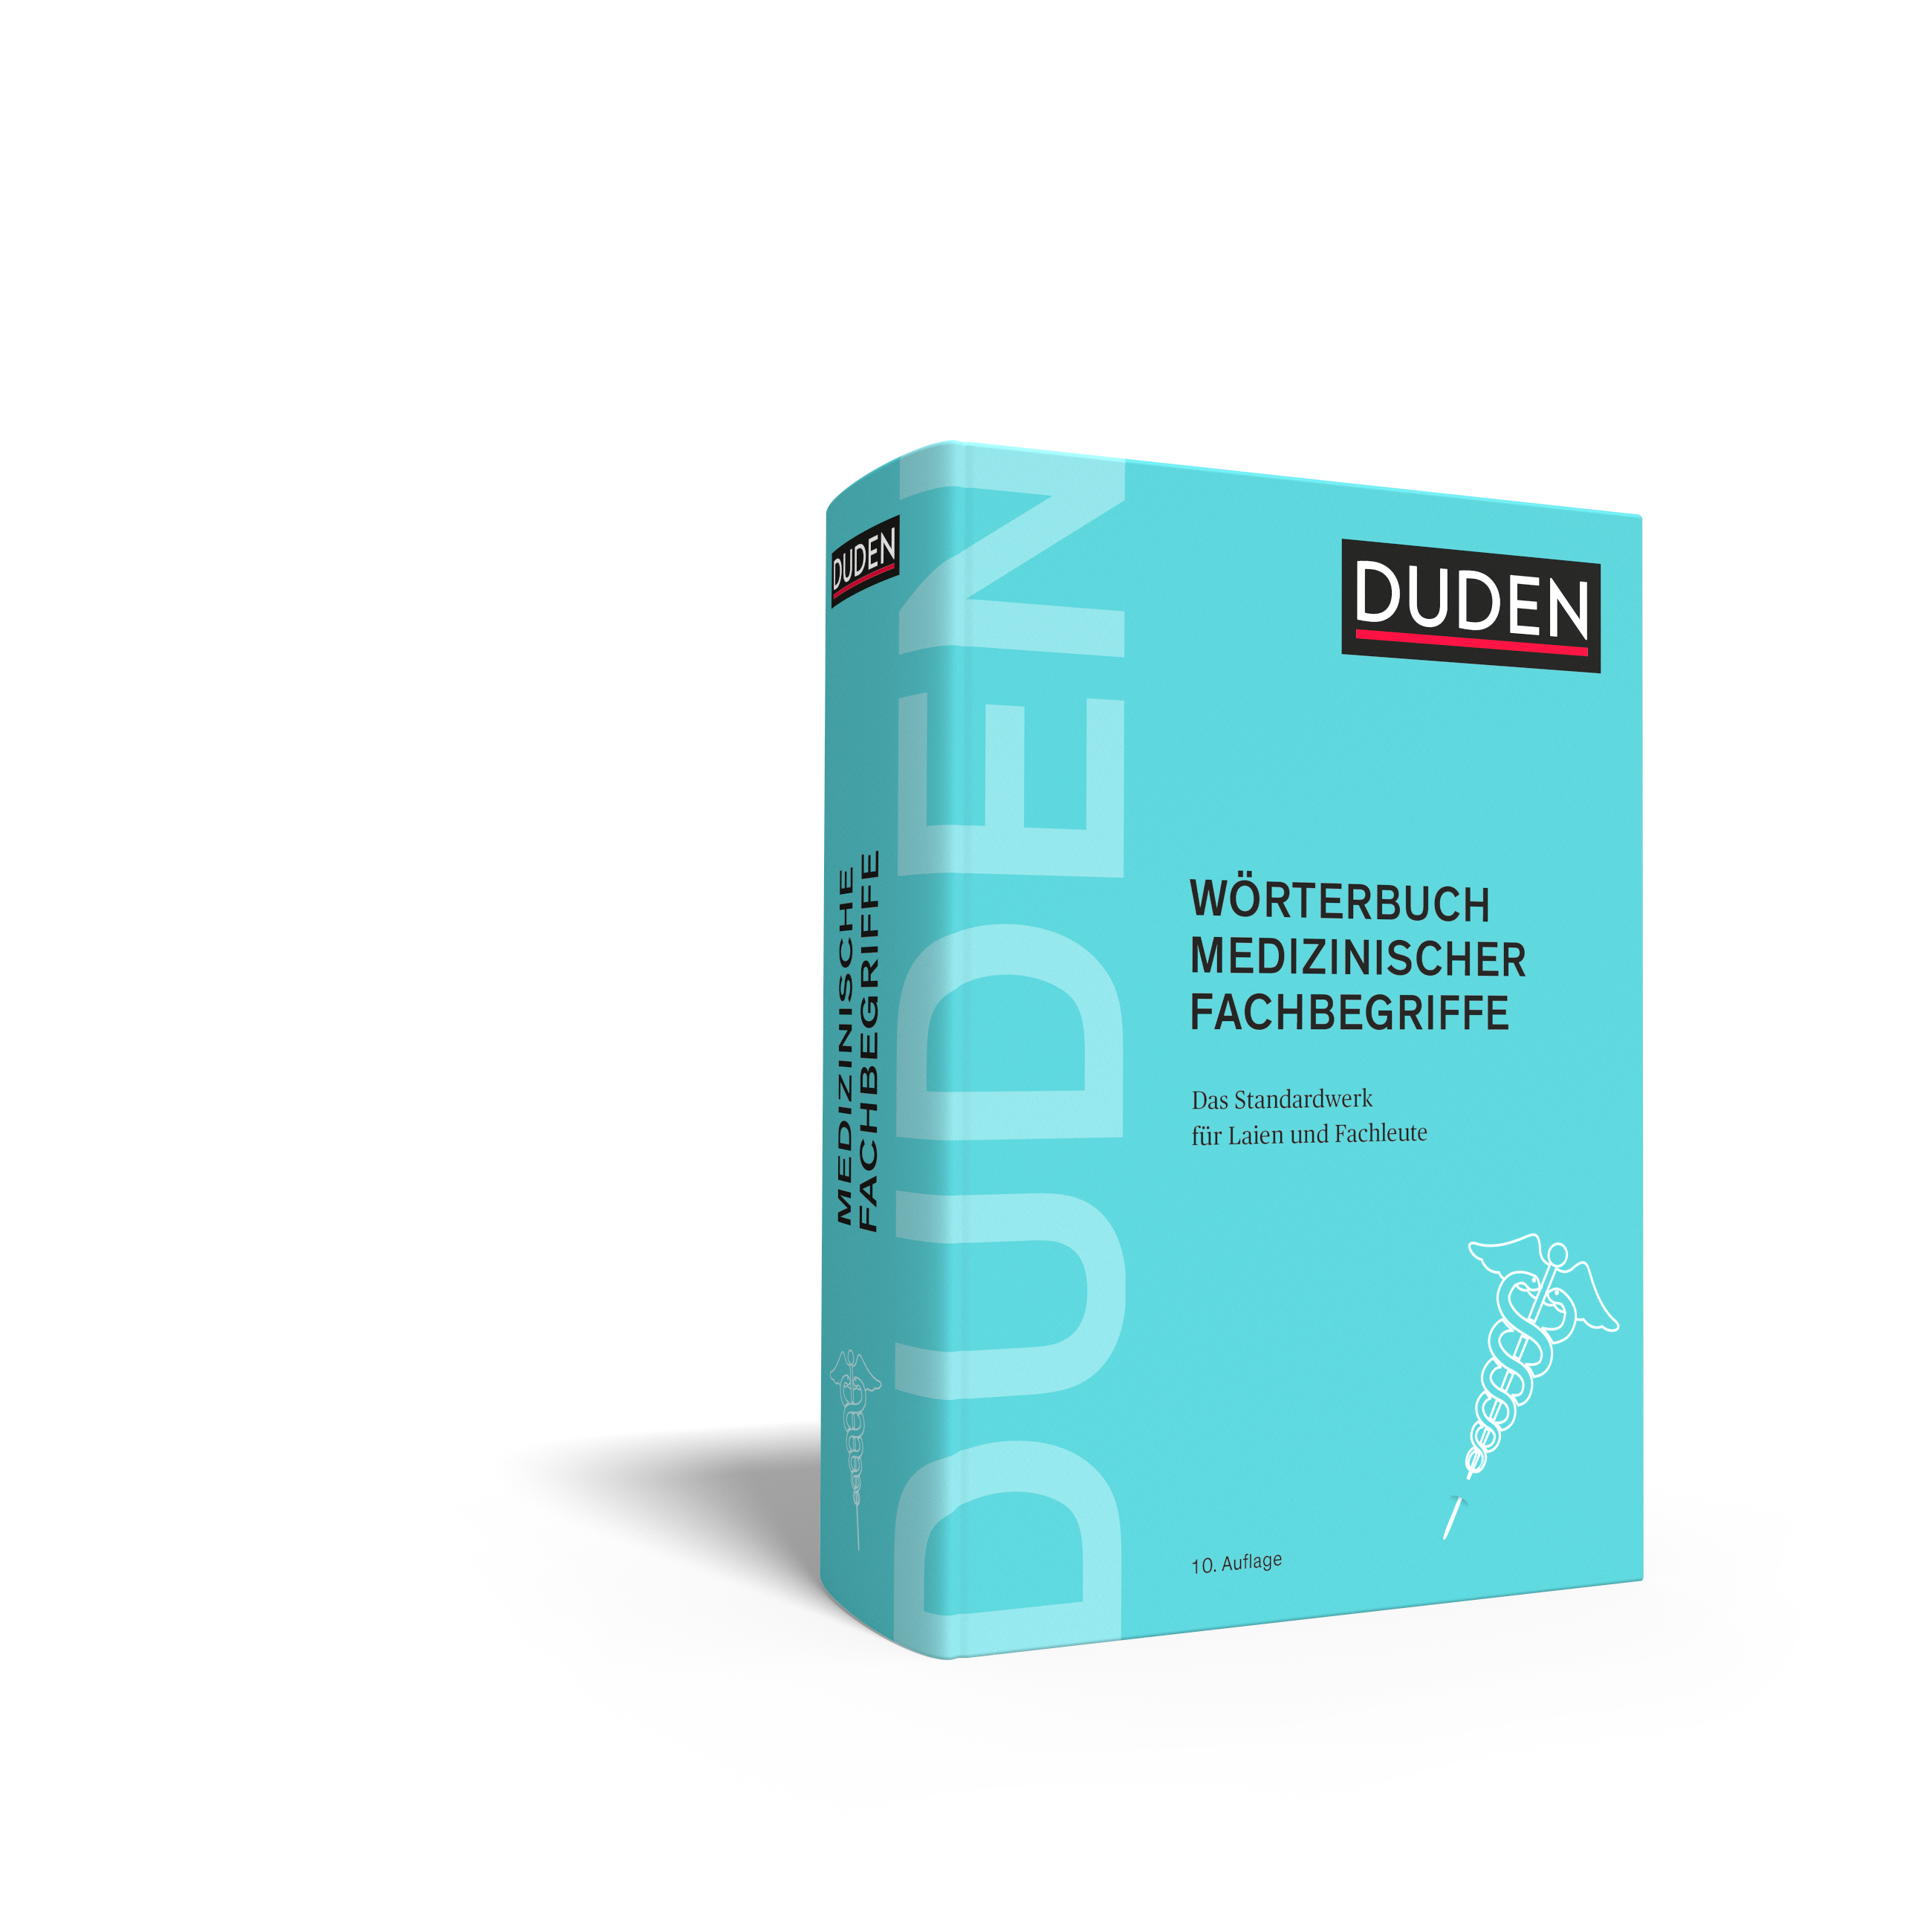 Duden – Wörterbuch medizinischer Fachbegriffe